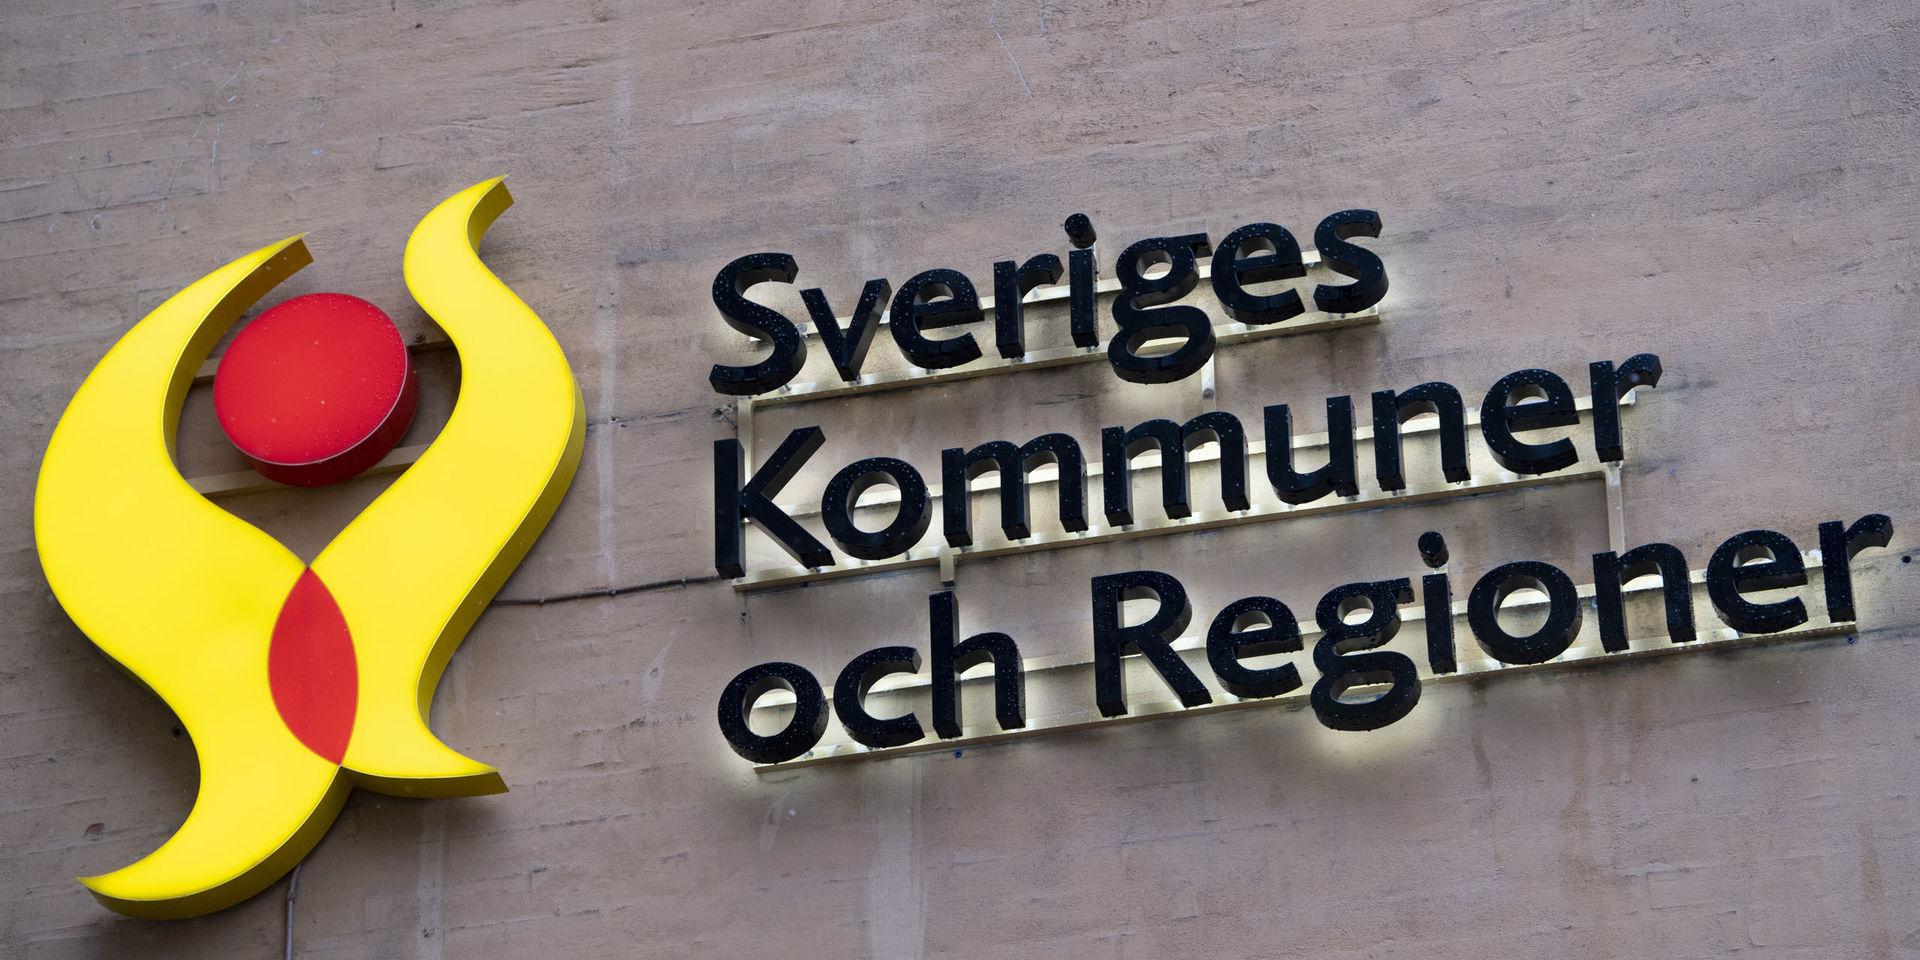 Sveriges kommuner och regioner vill lätta på trycket ytterligare efter den slopade karensdagen. 